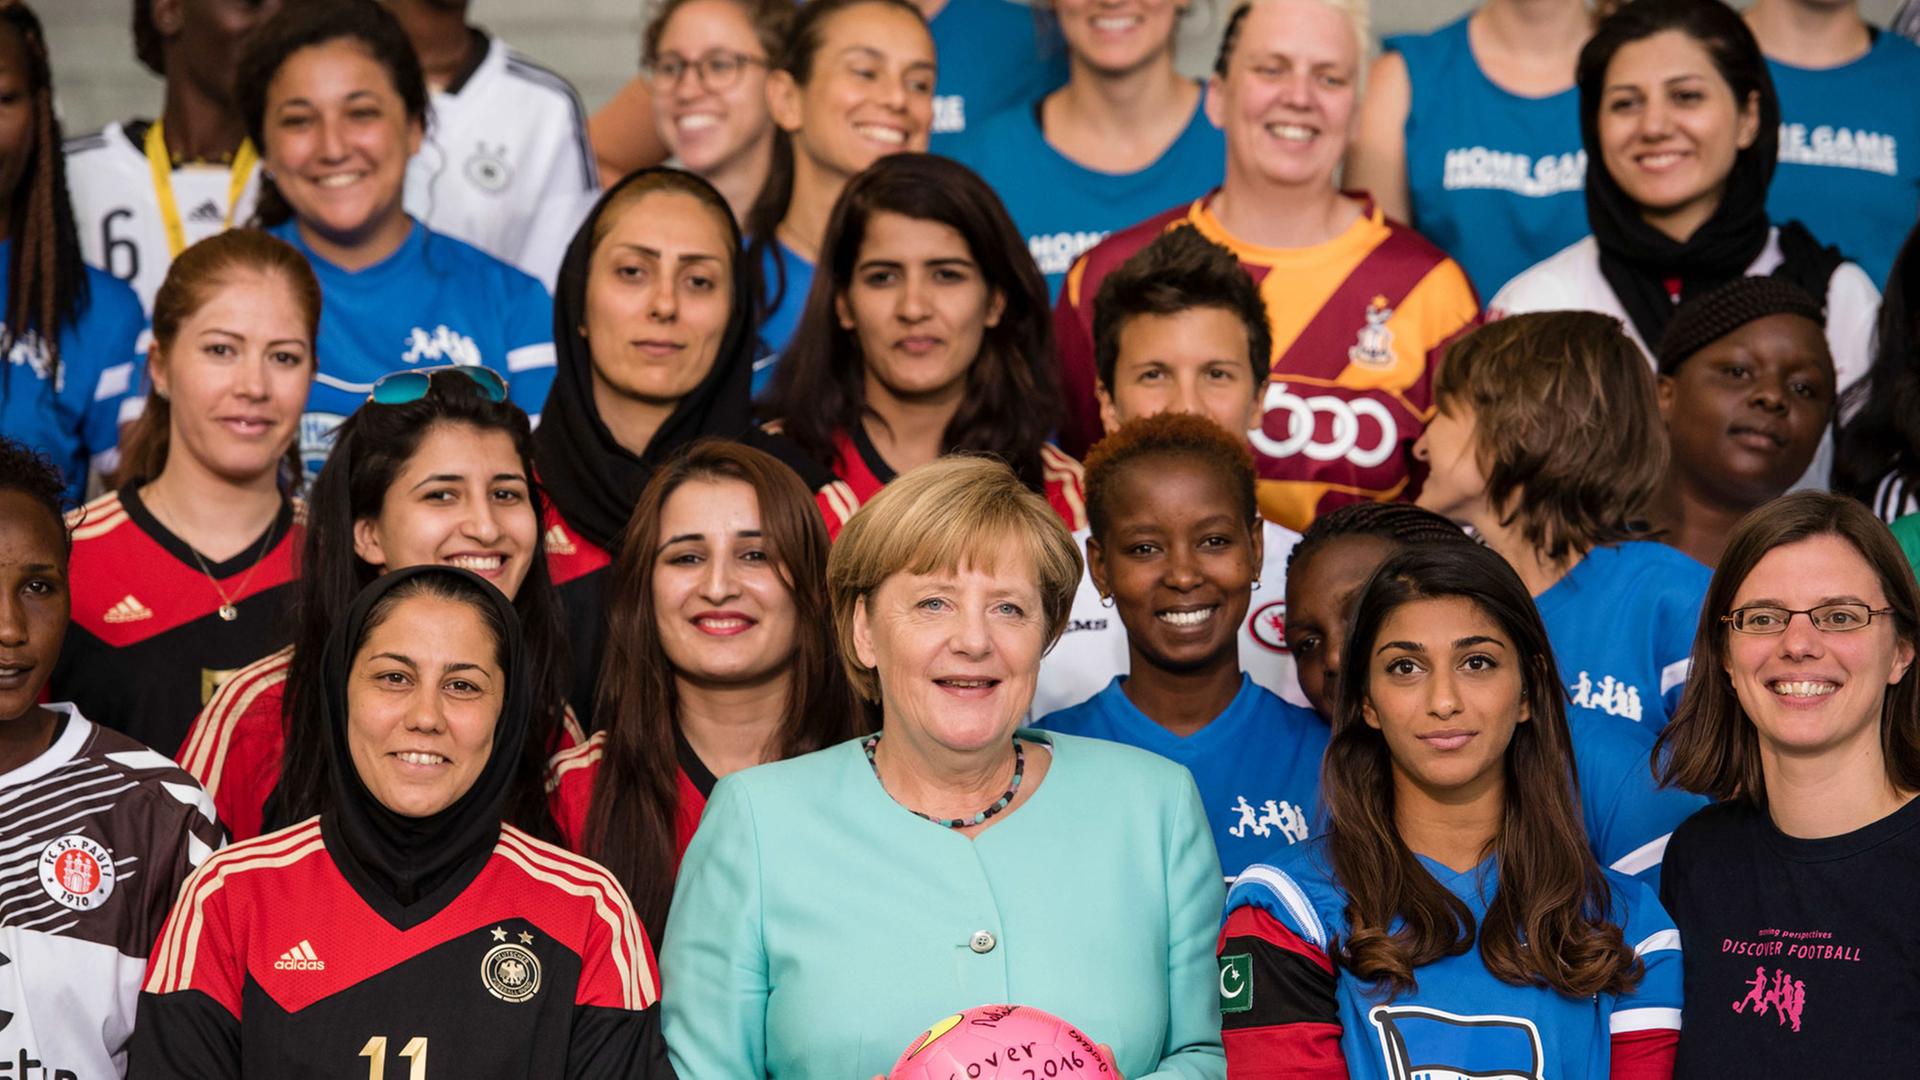 Das Fußball-Frauenteam "Discover Football" bei Merkel. Bundeskanzlerin Angela Merkel (CDU, Mitte) posiert am 01.09.2016 gemeinsam mit Fußballerinnen des Projektes «Discover Football» im Bundeskanzleramt in Berlin für ein gemeinsames Foto. Das Projekt «Discover Football» setzt sich mithilfe des Fußballs weltweit für Gleichberechtigung und Frauenrechte ein.